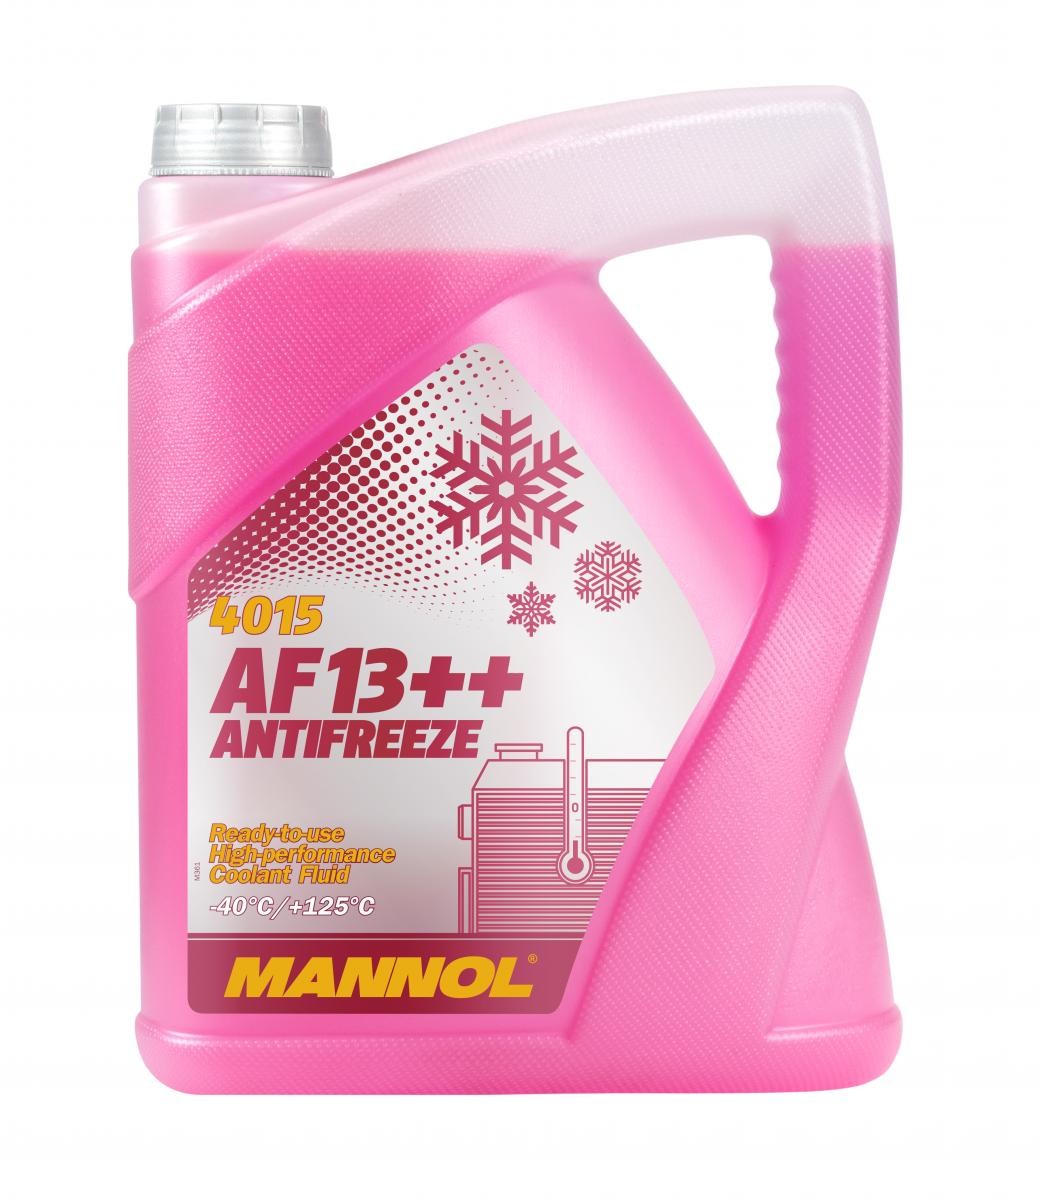 PEUGEOT KISBEE Kühlmittel G12 Rot, 5l MANNOL AF13++, High-performance MN4015-5